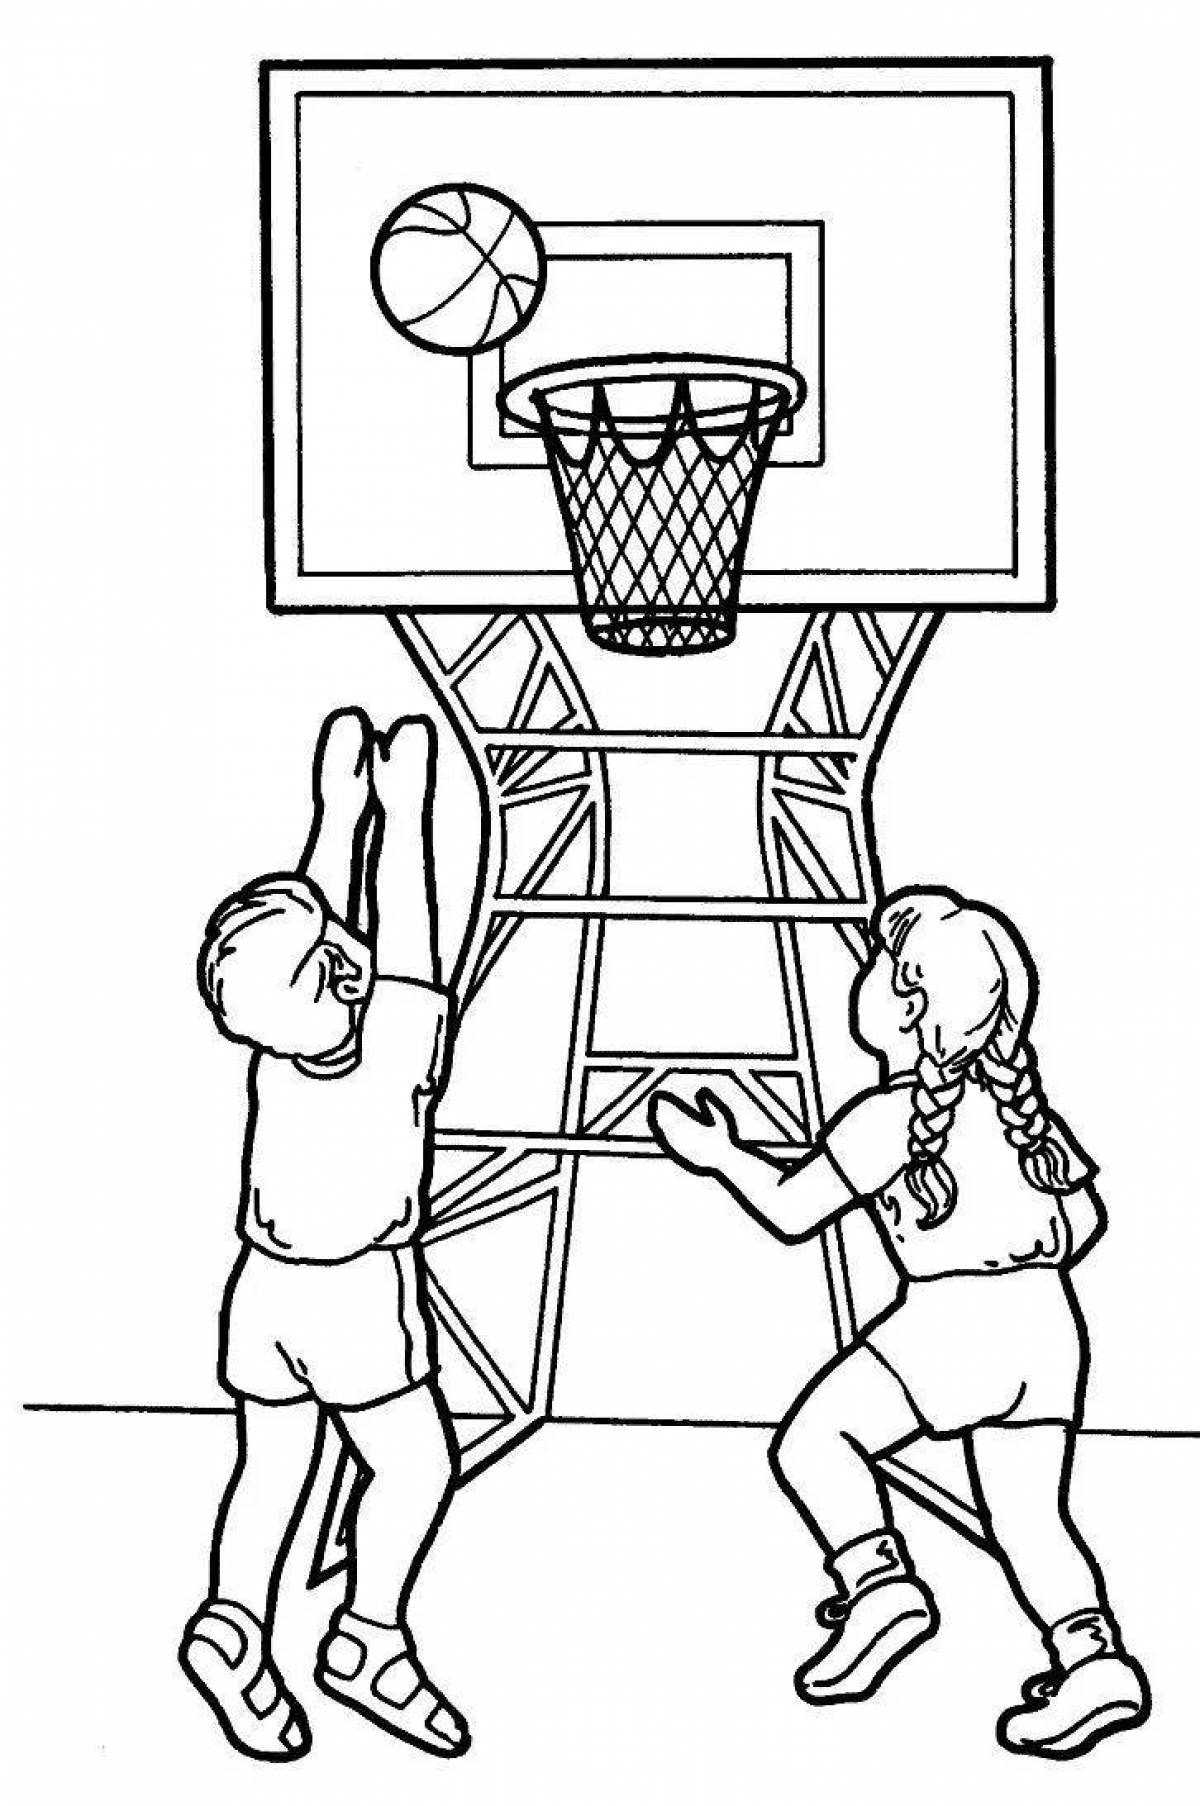 Рисунок рисовать играть. Баскетбол раскраска для детей. Спортивные игры раскраска. Раскраска игра в баскетбол. Раскраска спорт для детей.